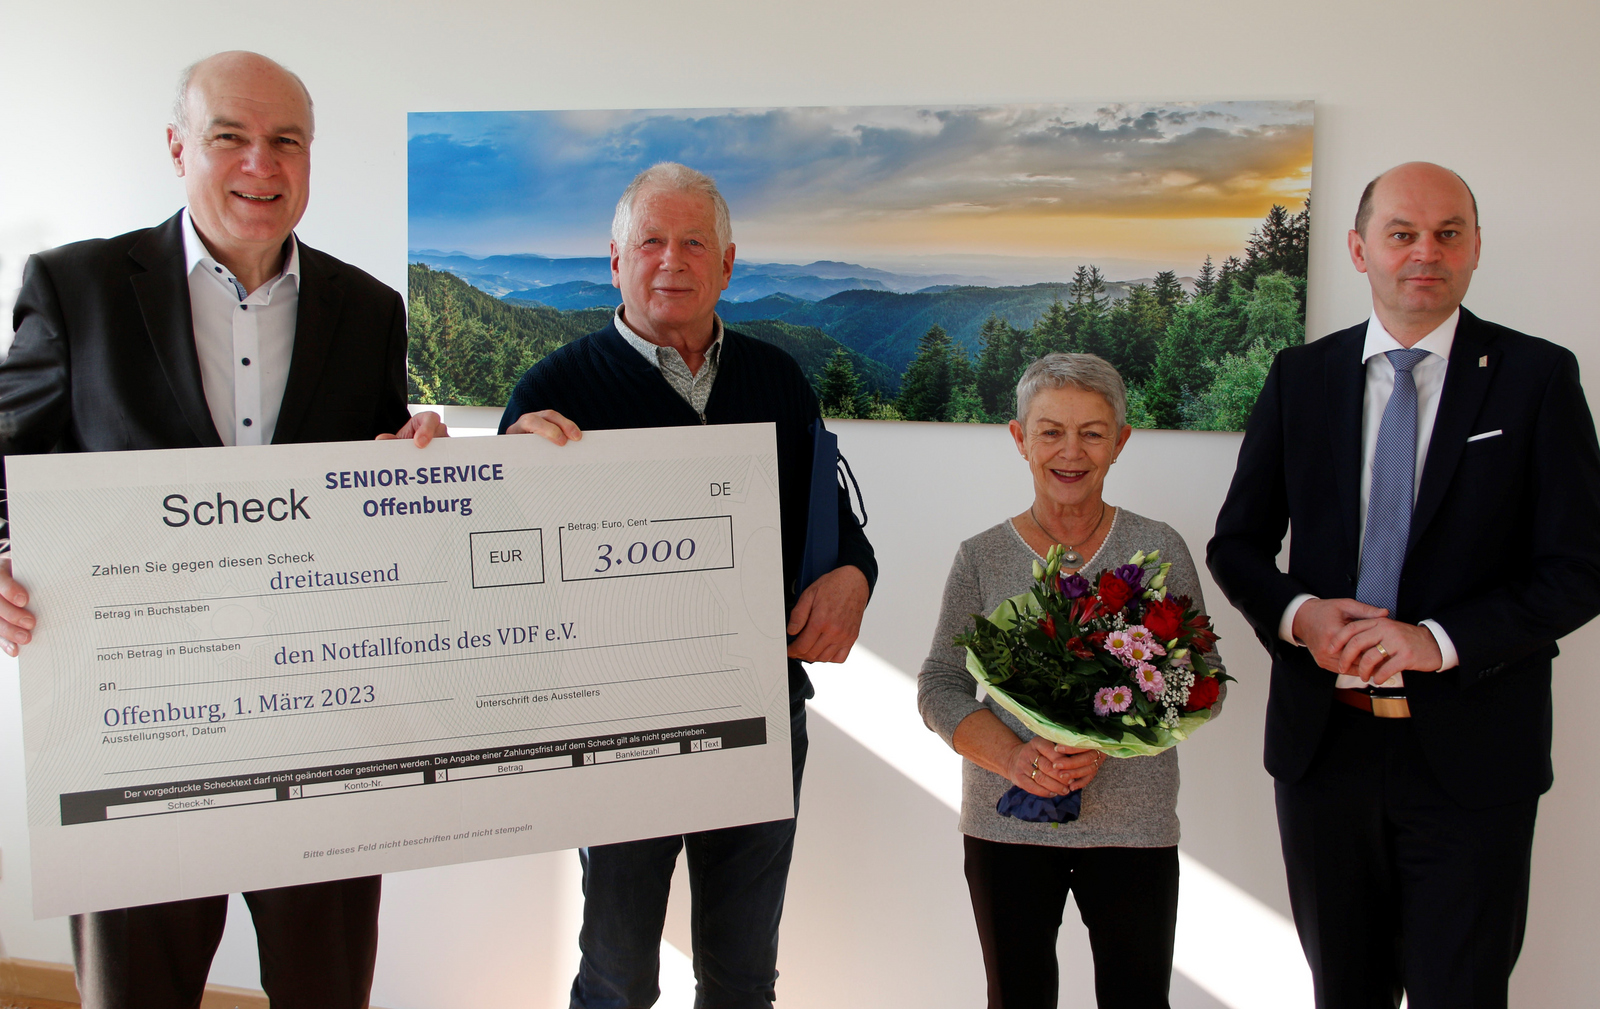 Gruppenfoto mit Spendenscheck vor Schwarzwaldbild